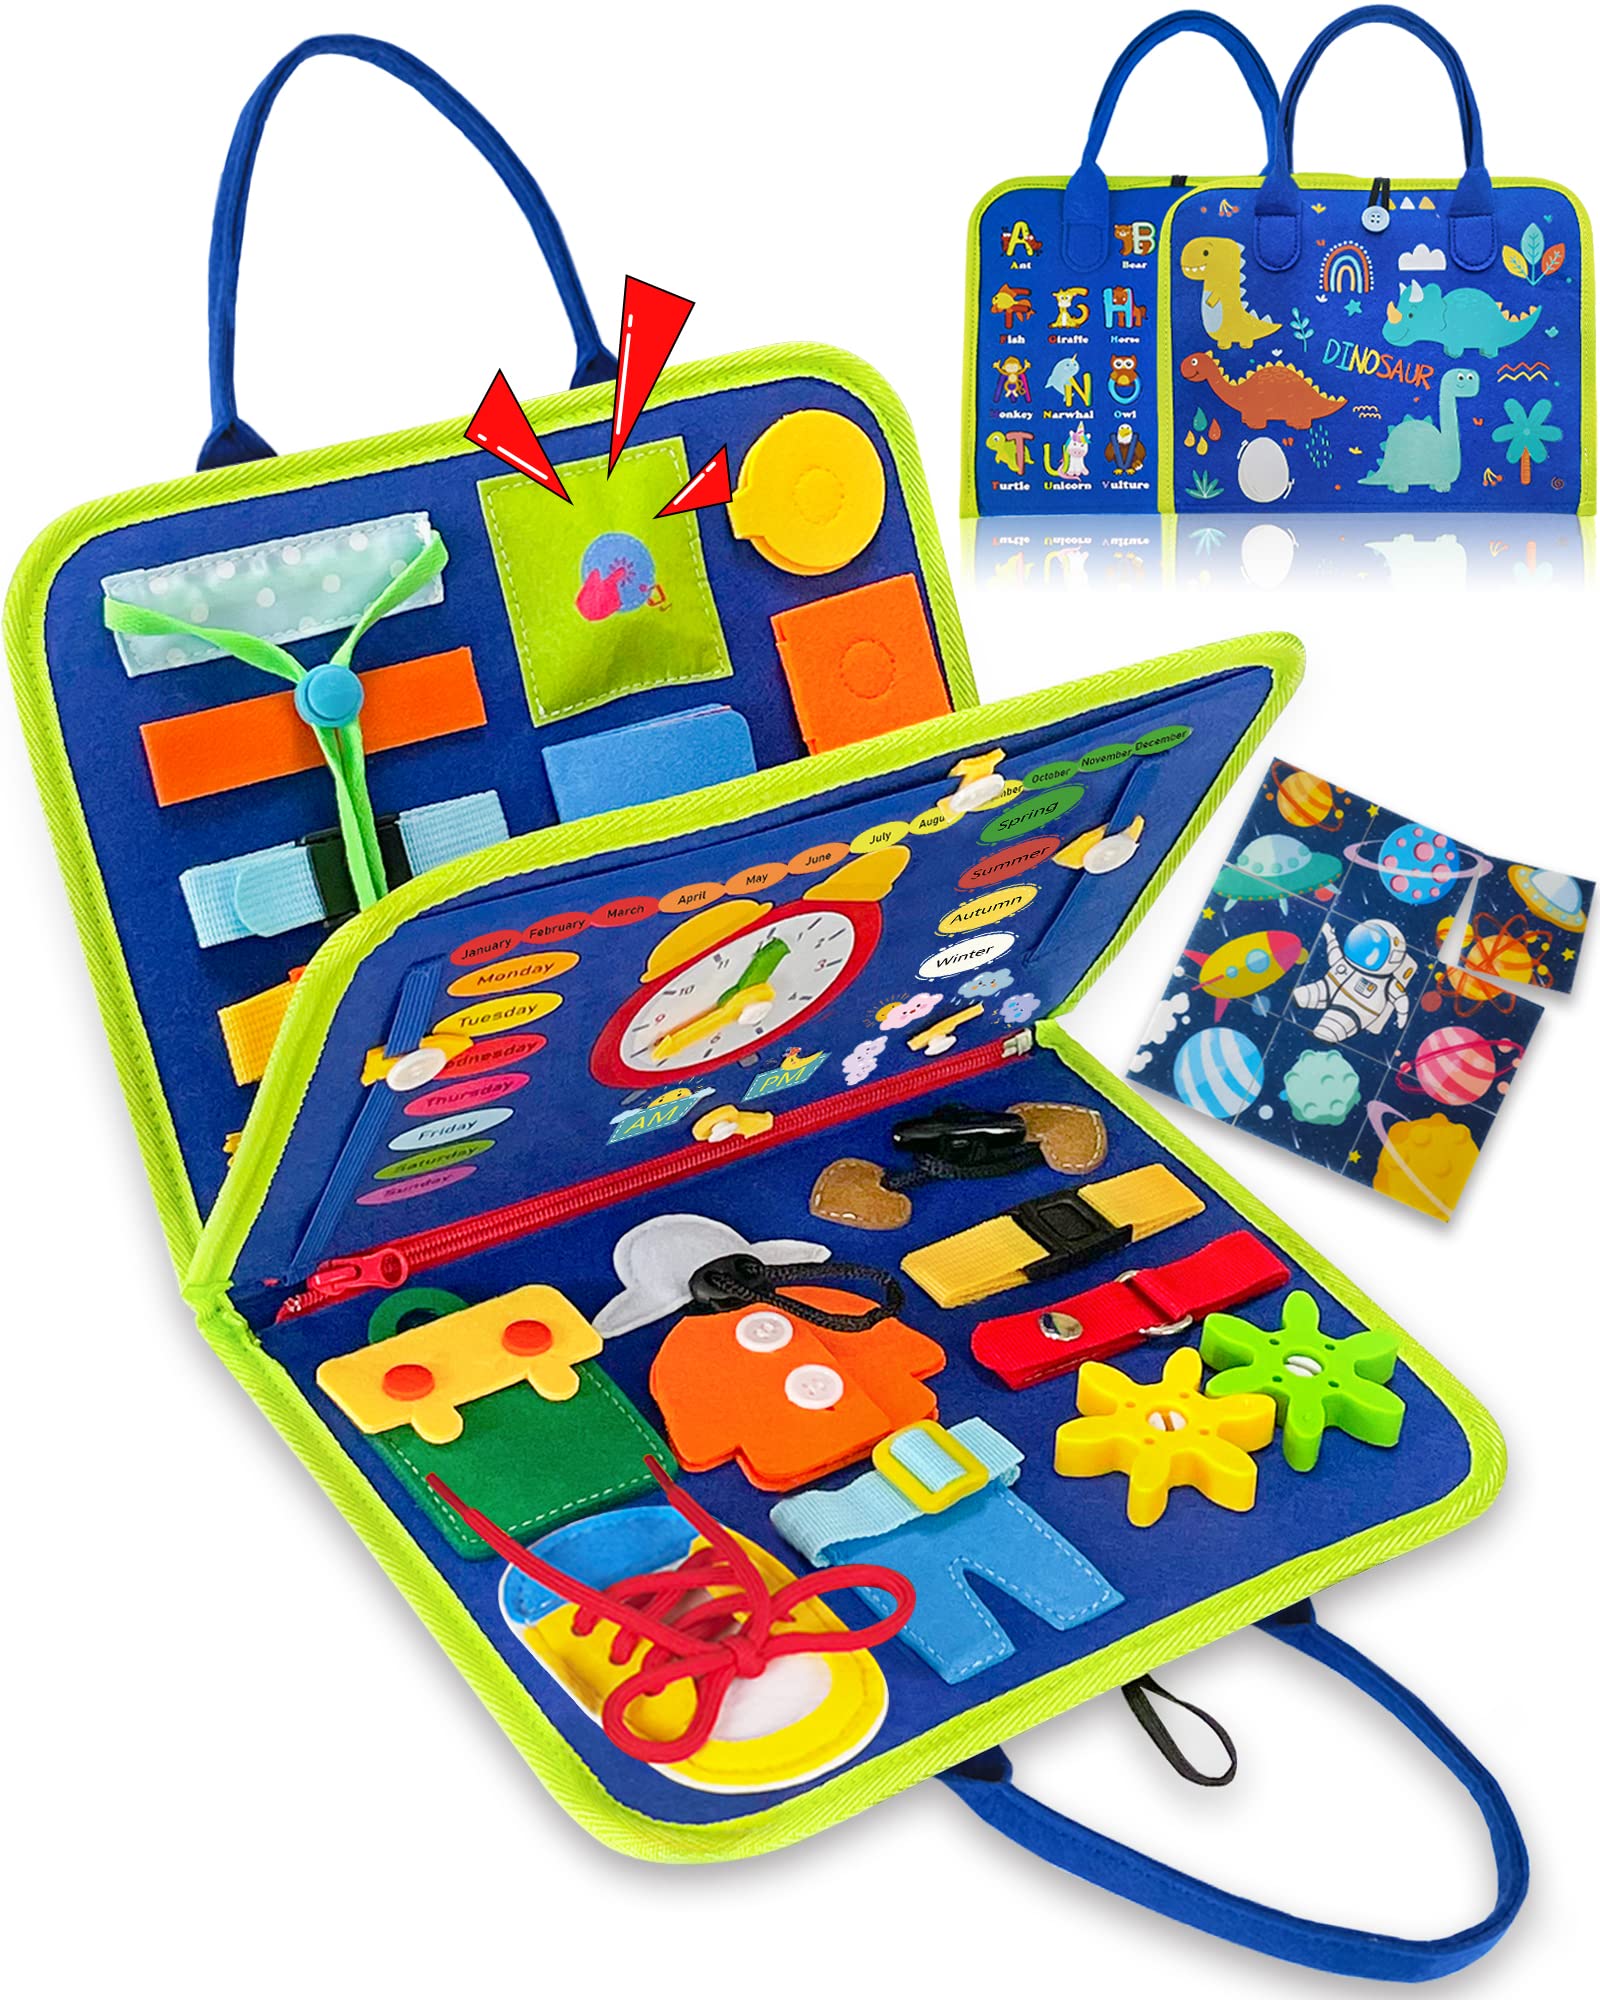 Exorany Busy Board Montessori Toys